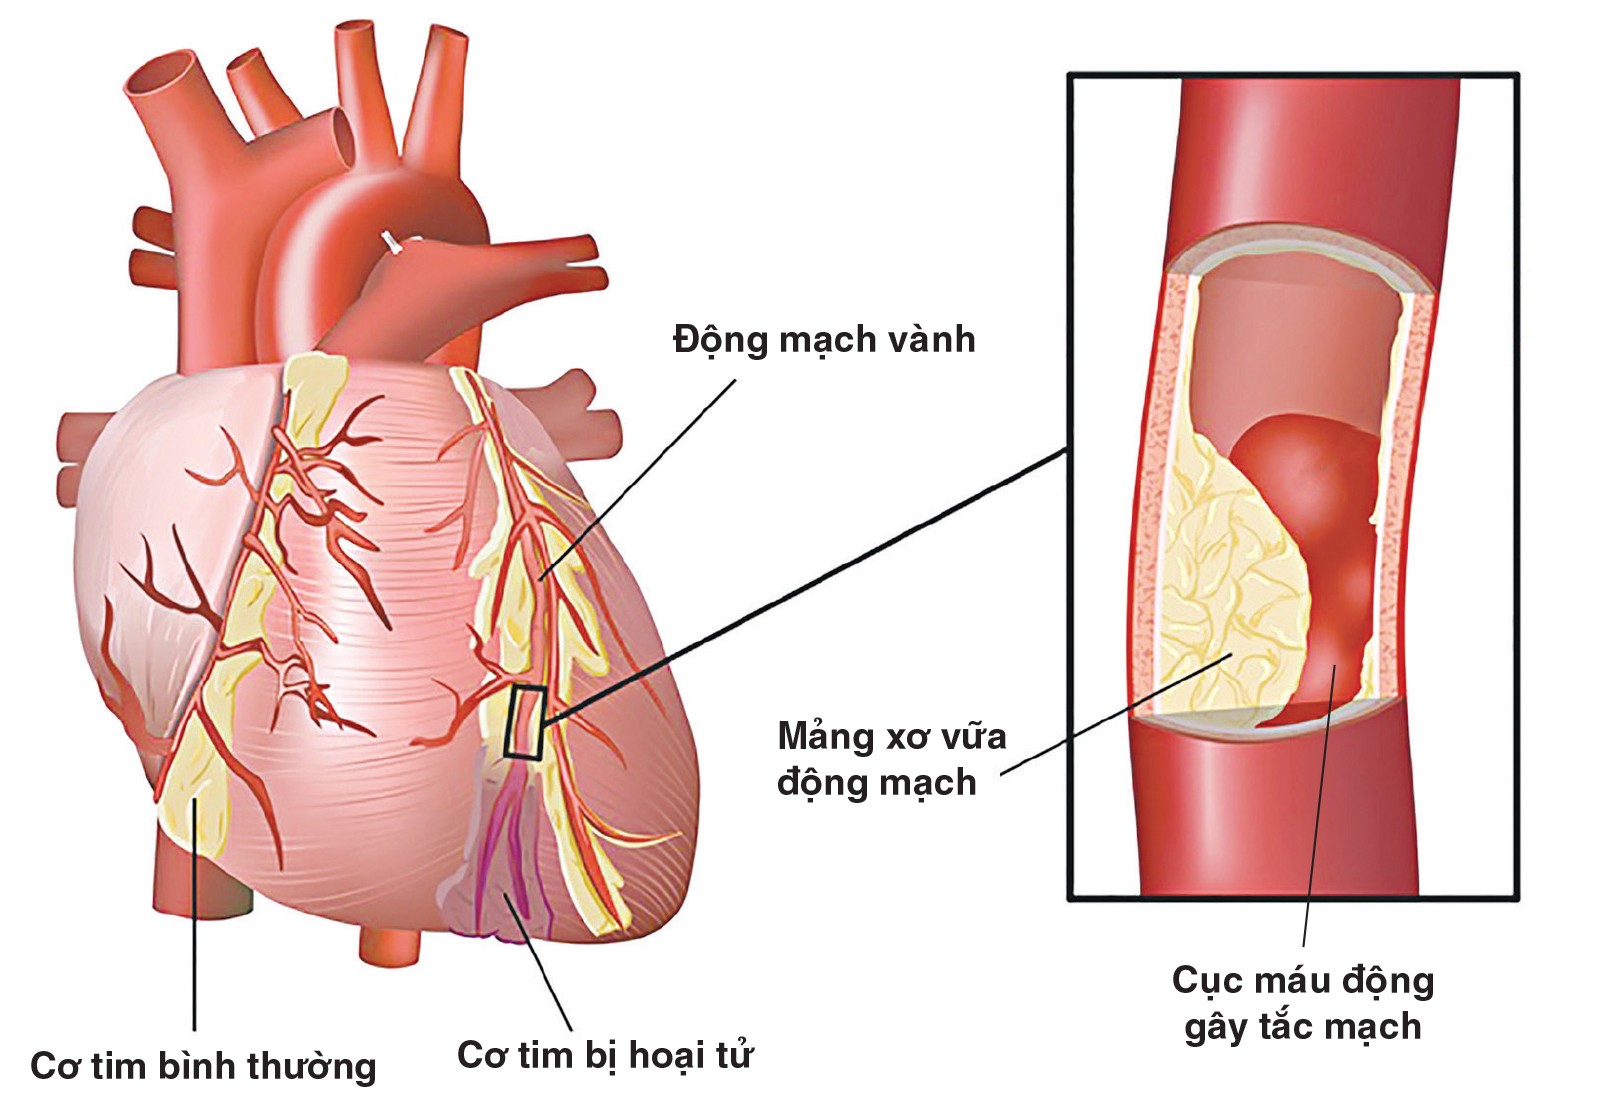 benh dong mach vanh 1 Nguyên nhân và triệu chứngư nhận biết bệnh động mạch vành